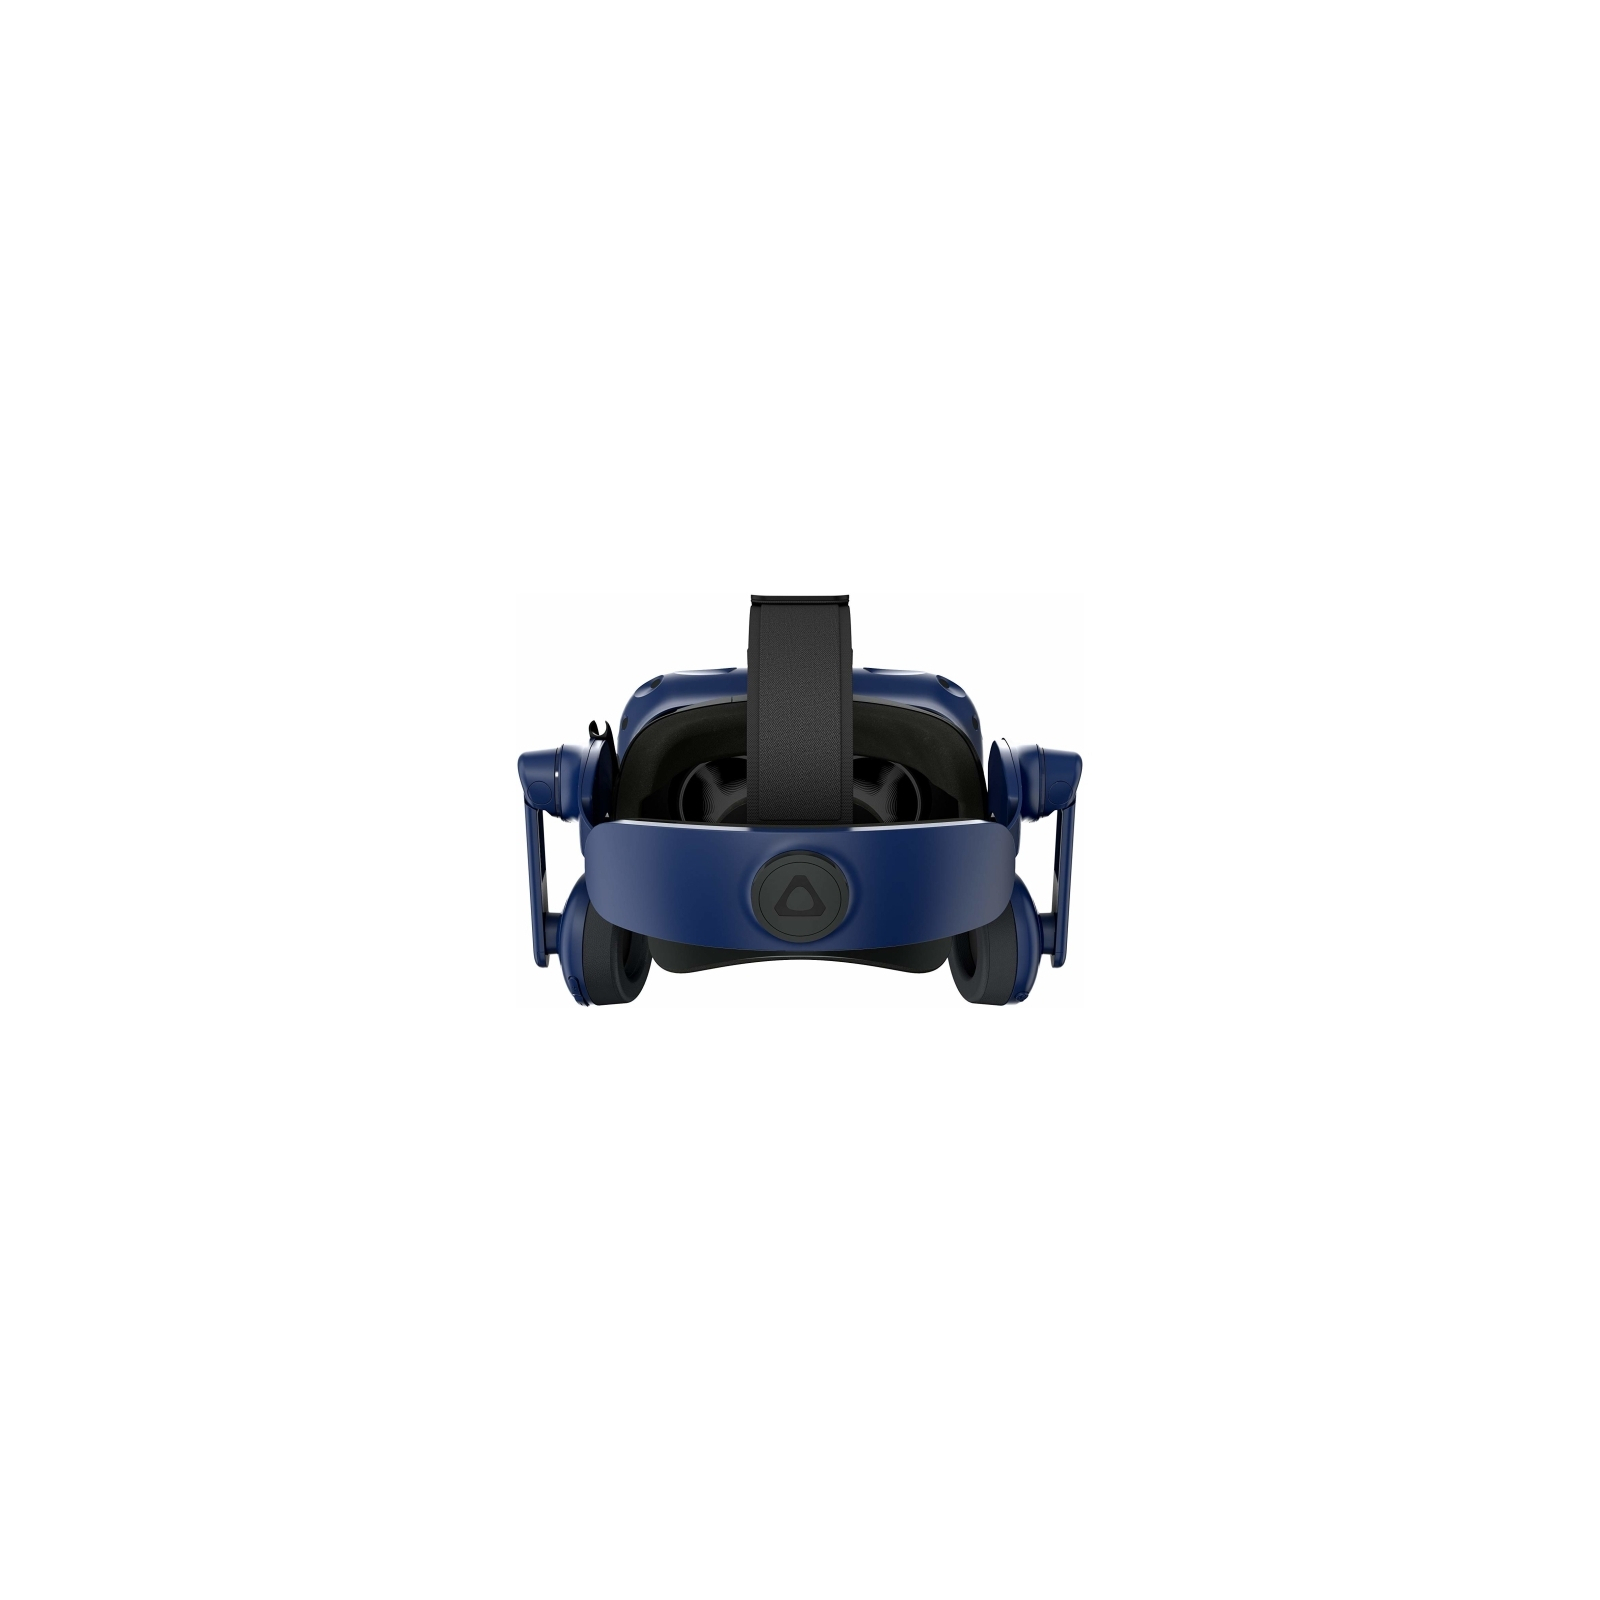 Очки виртуальной реальности HTC VIVE PRO HMD (2.0) Blue-Black (99HANW020-00) изображение 4